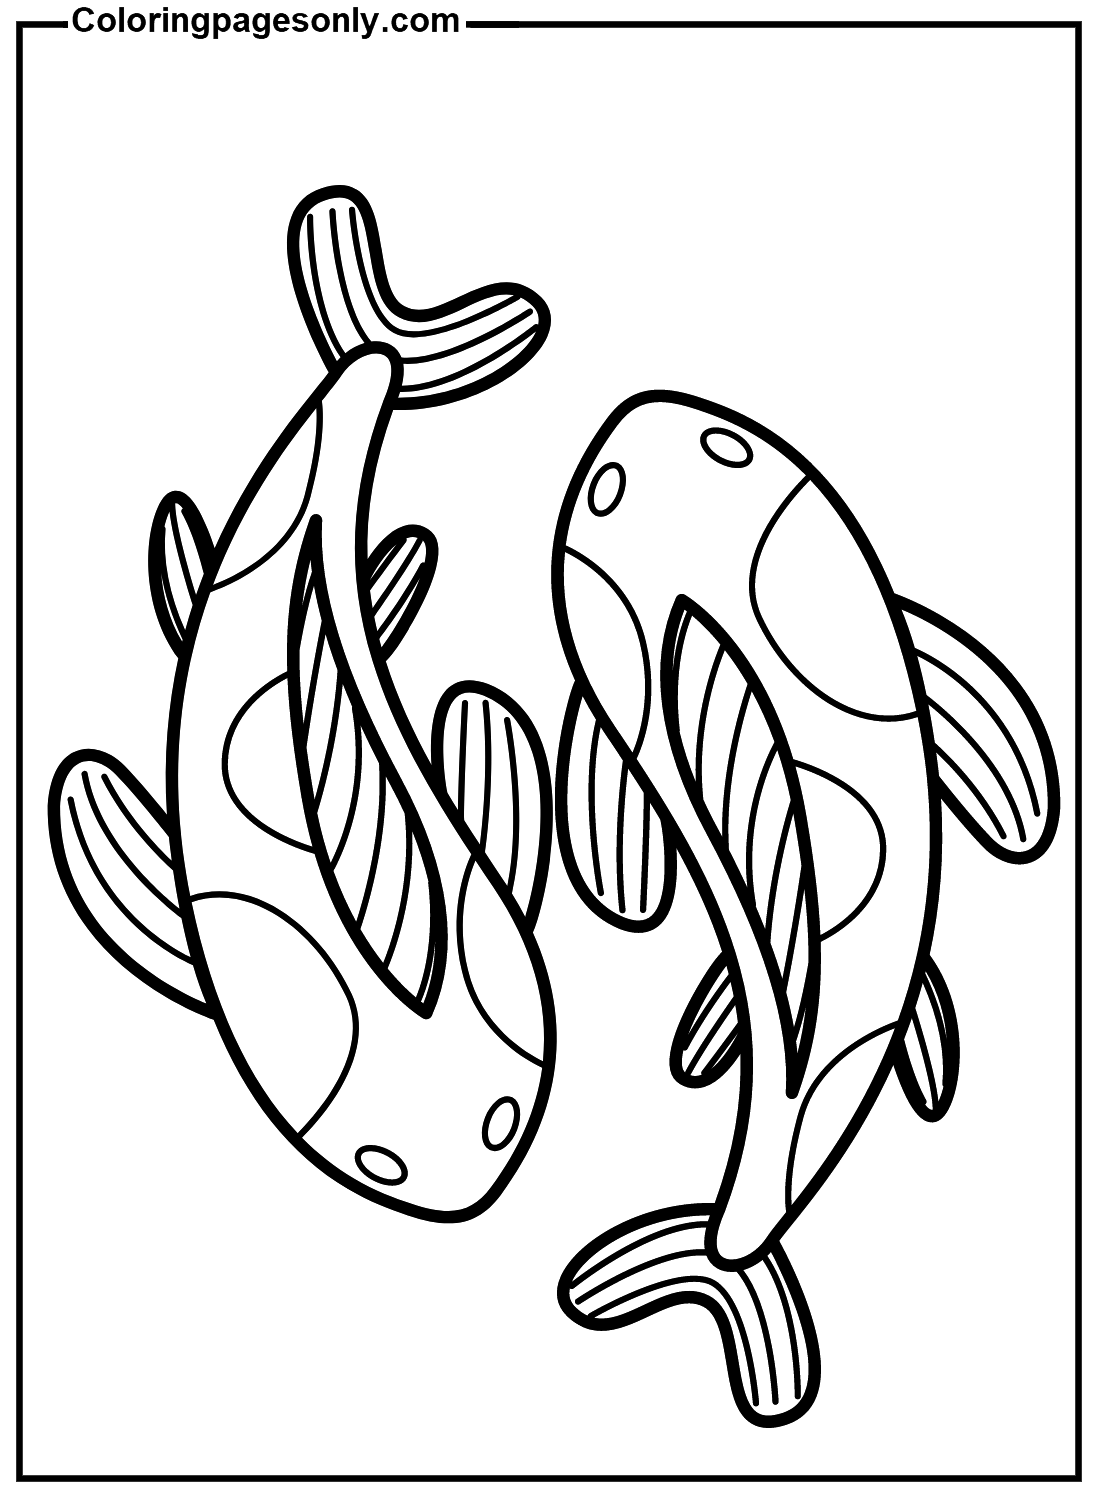 Desenho de peixe Koi fácil de Koi Fish